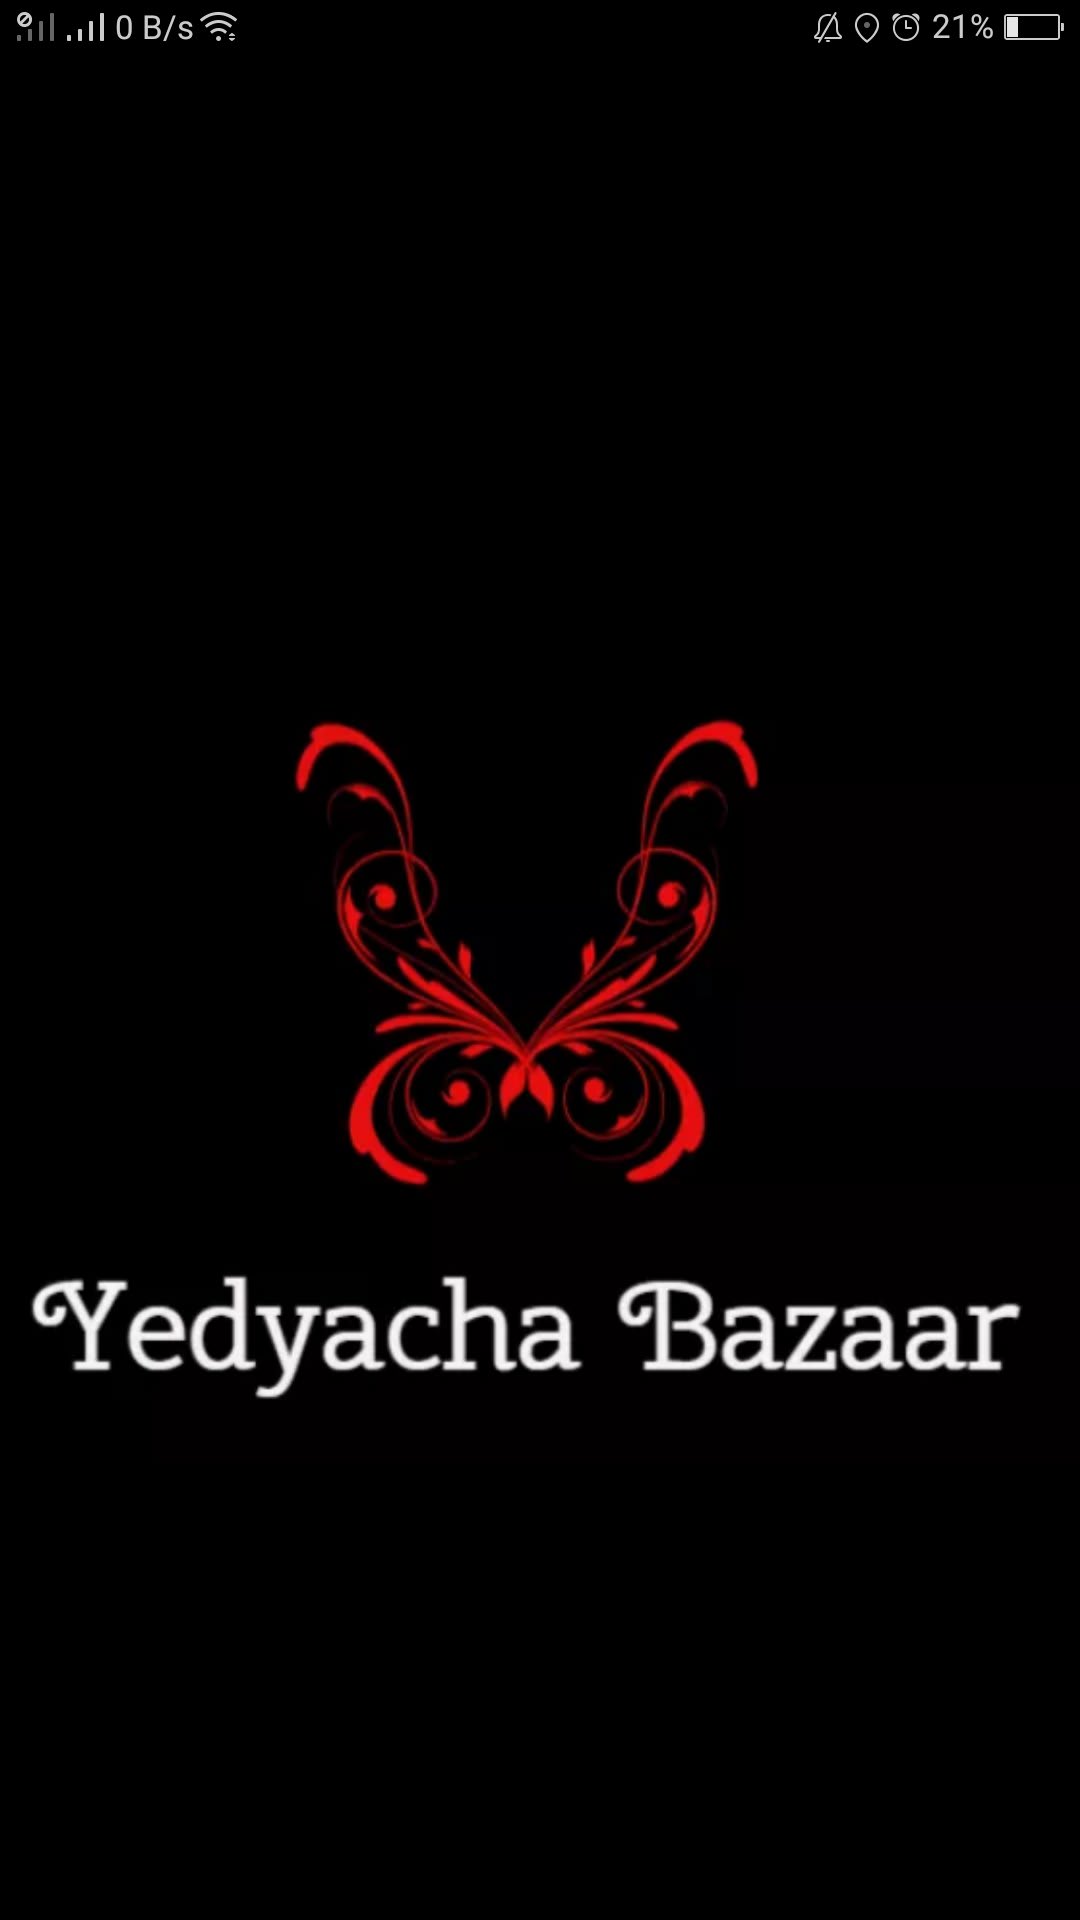 Yedyacha Bazaar